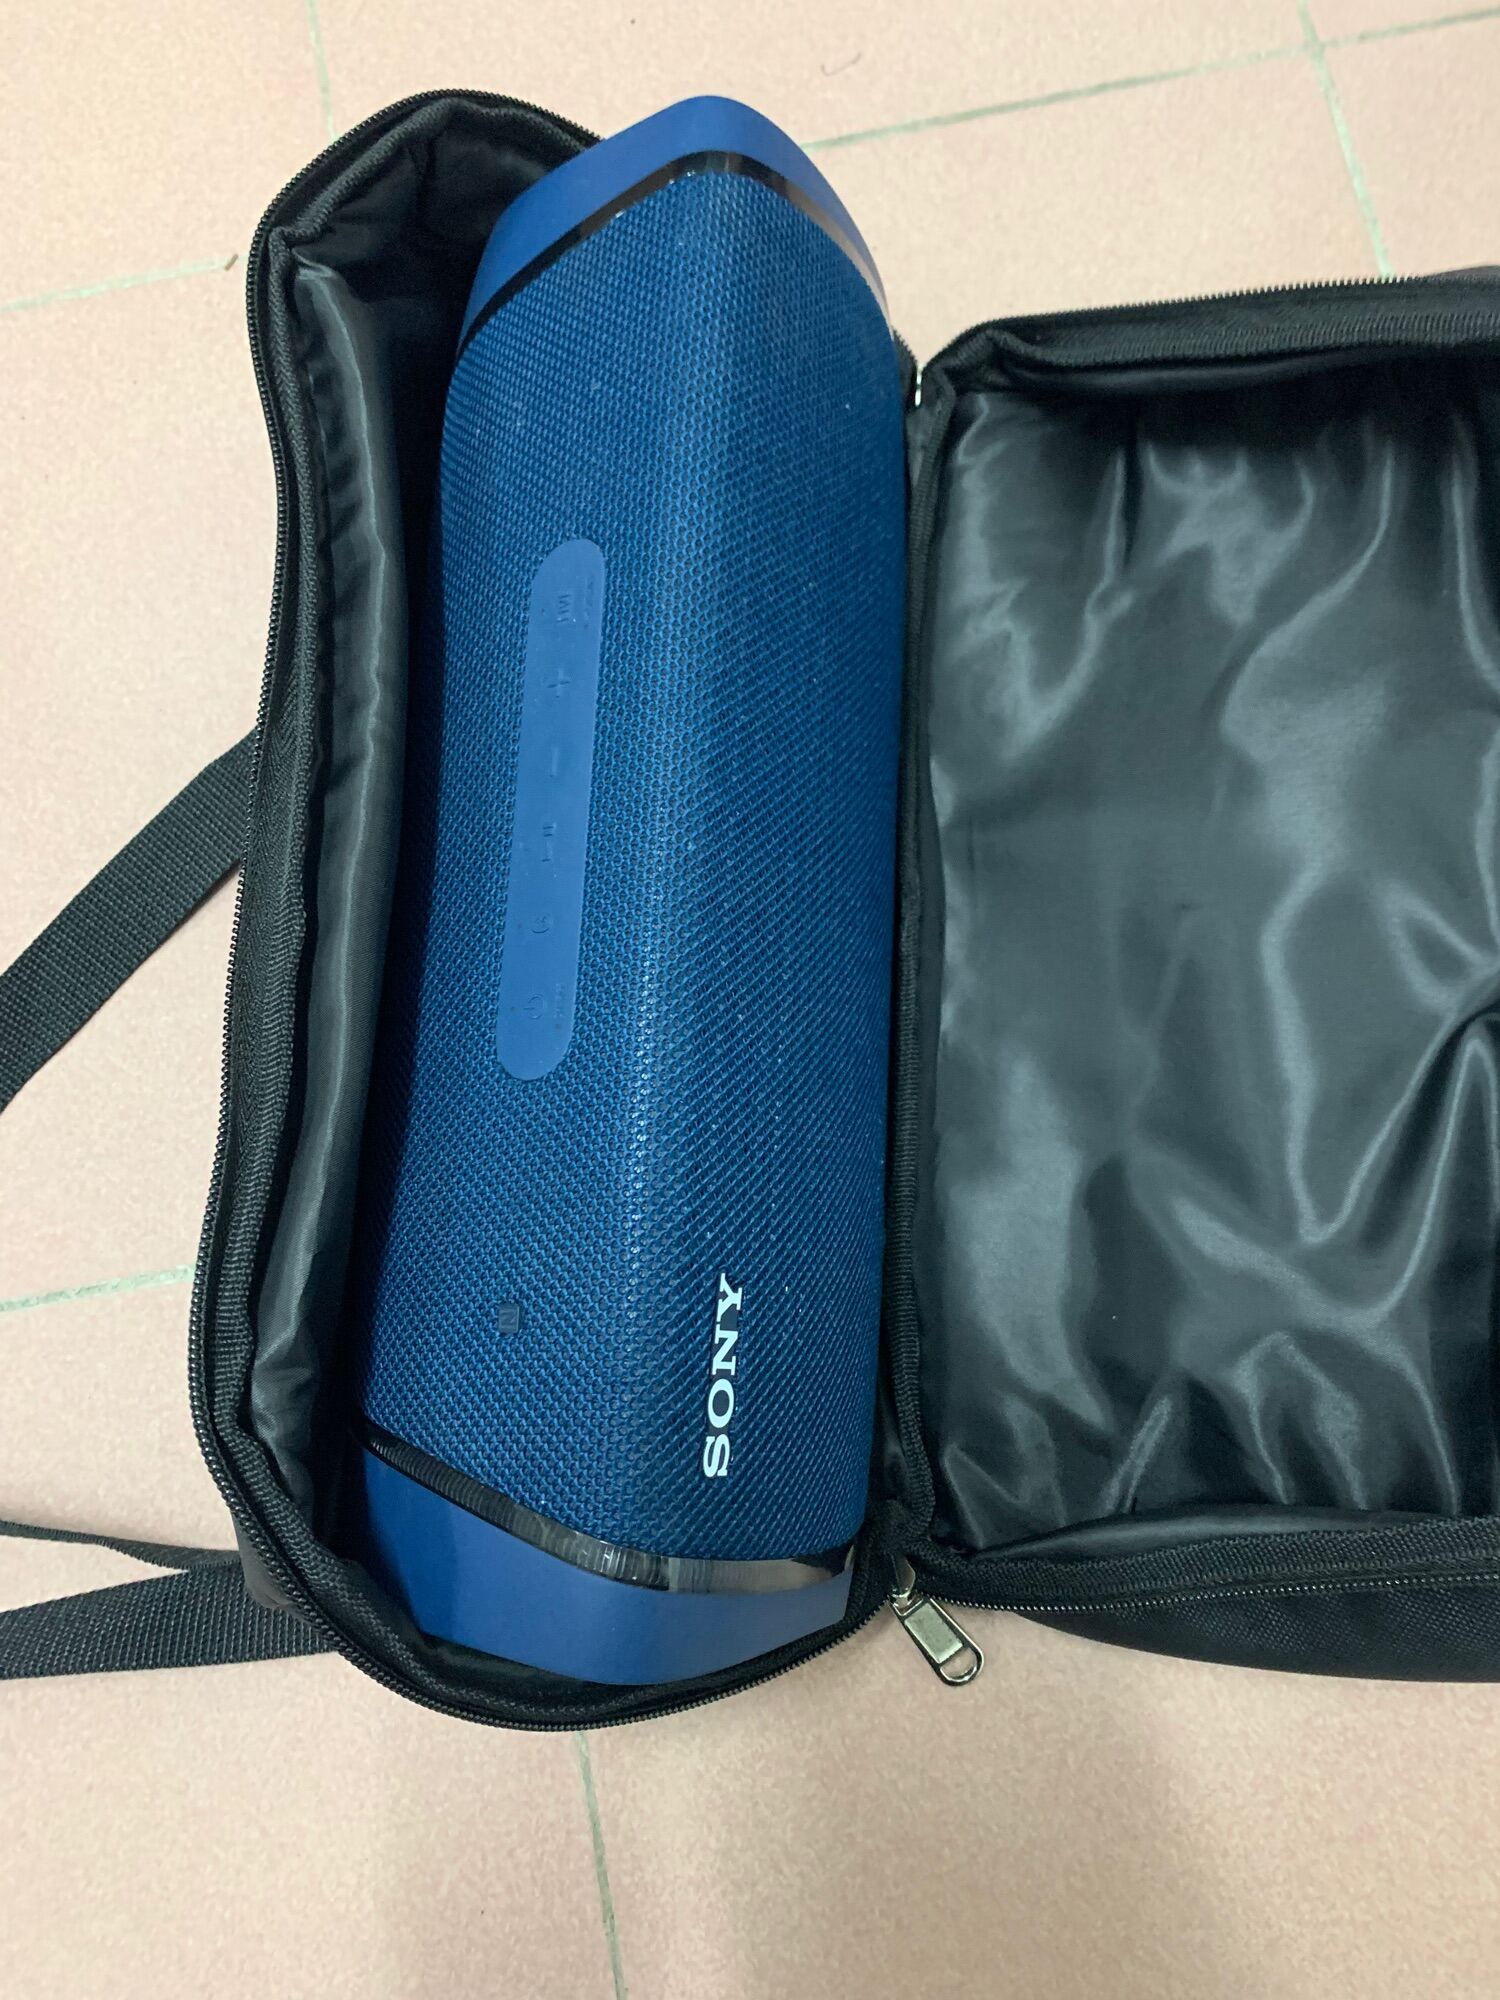 Túi đựng loa Sony Xb43